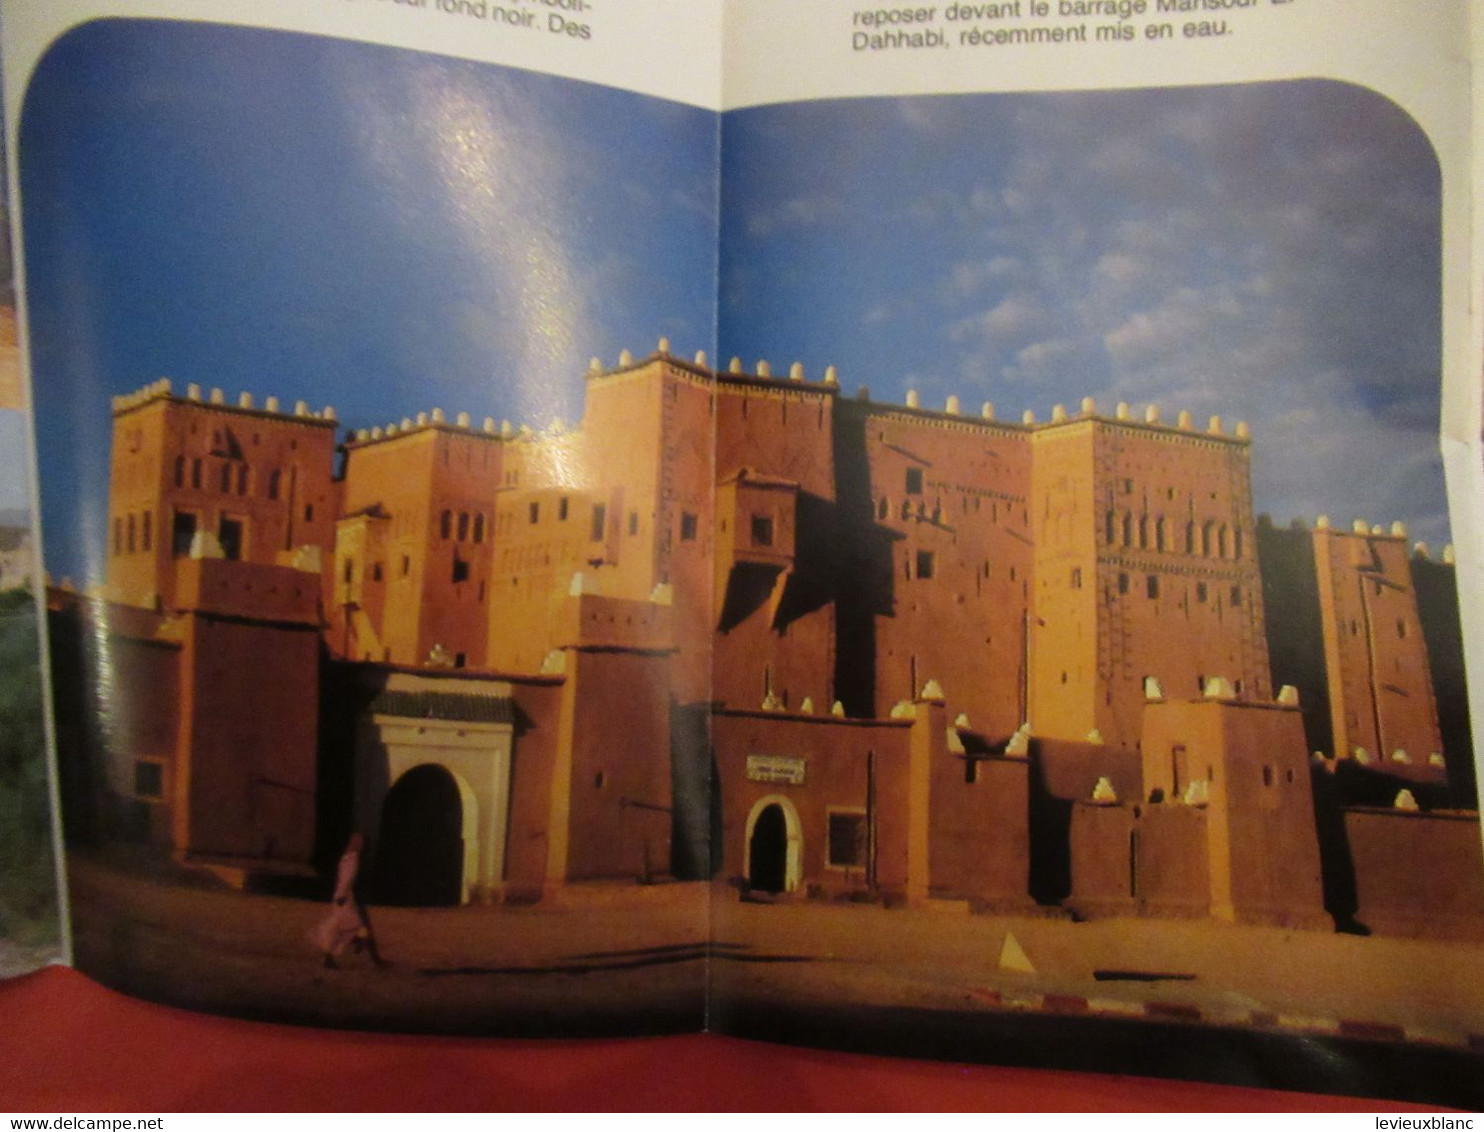 Document ancien/MAROC/Route des KASBAHS /Carte  et présentation illustrée/ Office  Marocain du Tourisme/1989   PGC464